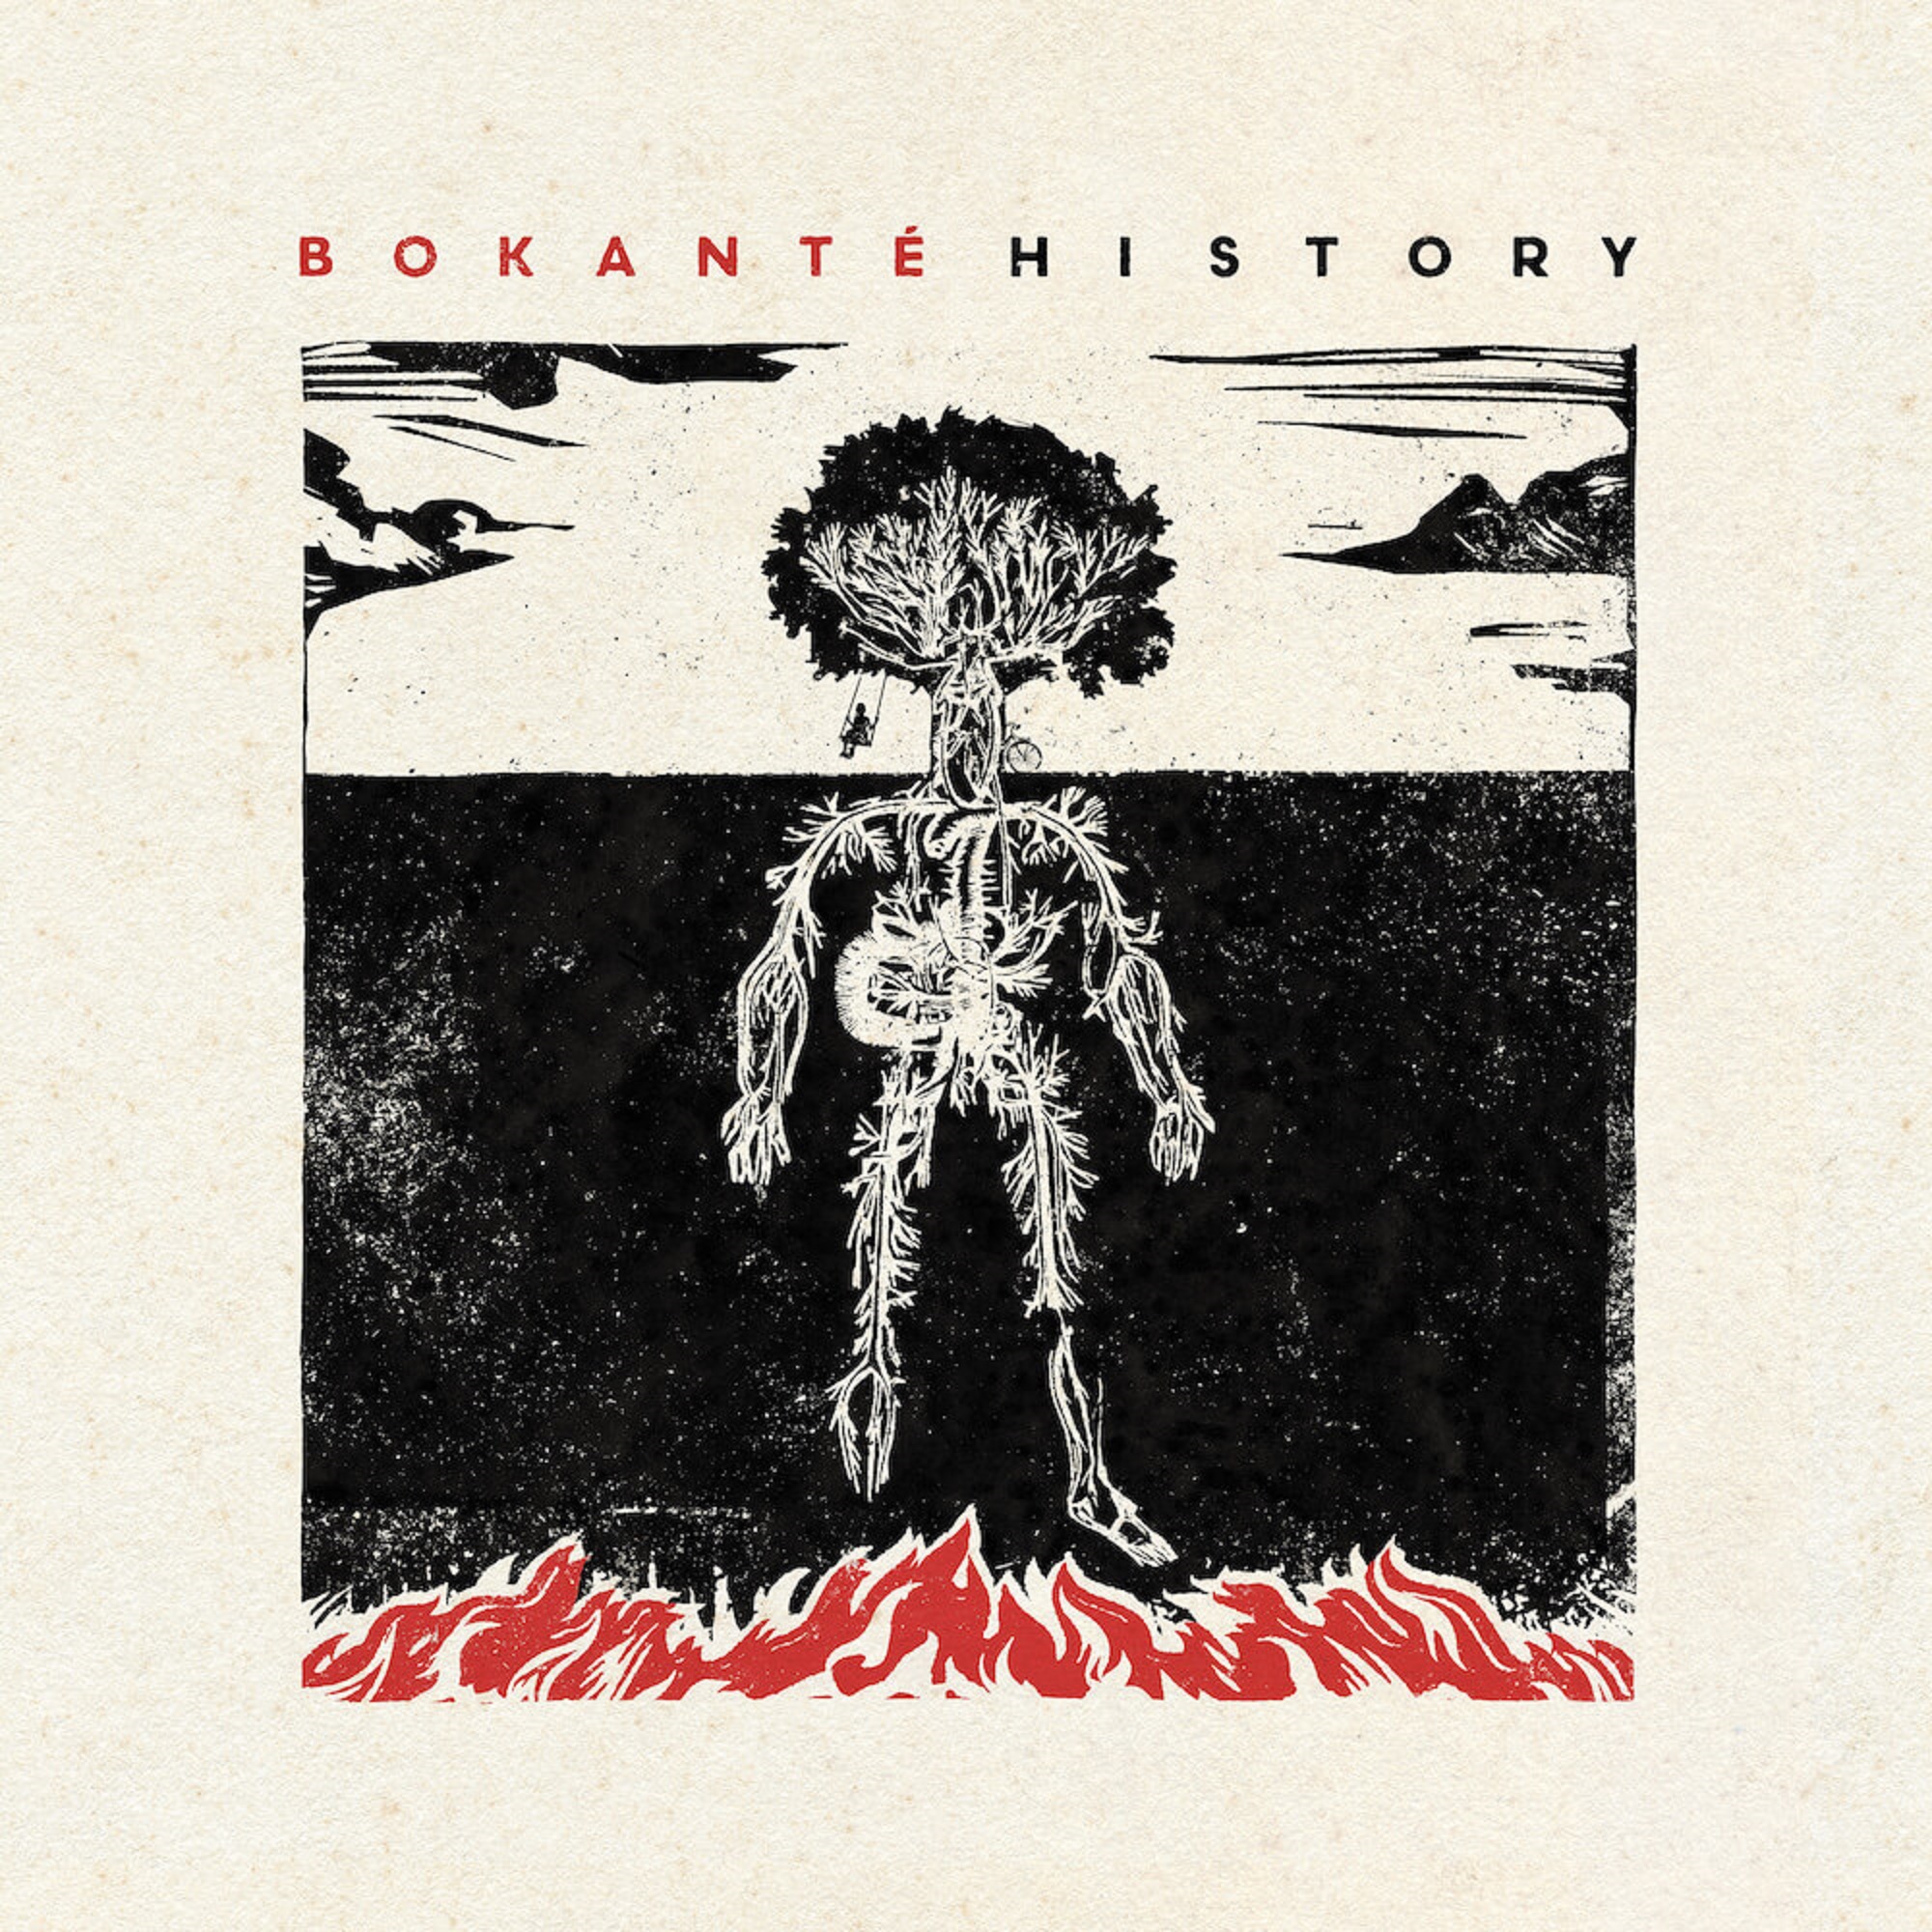 Bokanté Announces Newest Album “History” Due Out June 30th